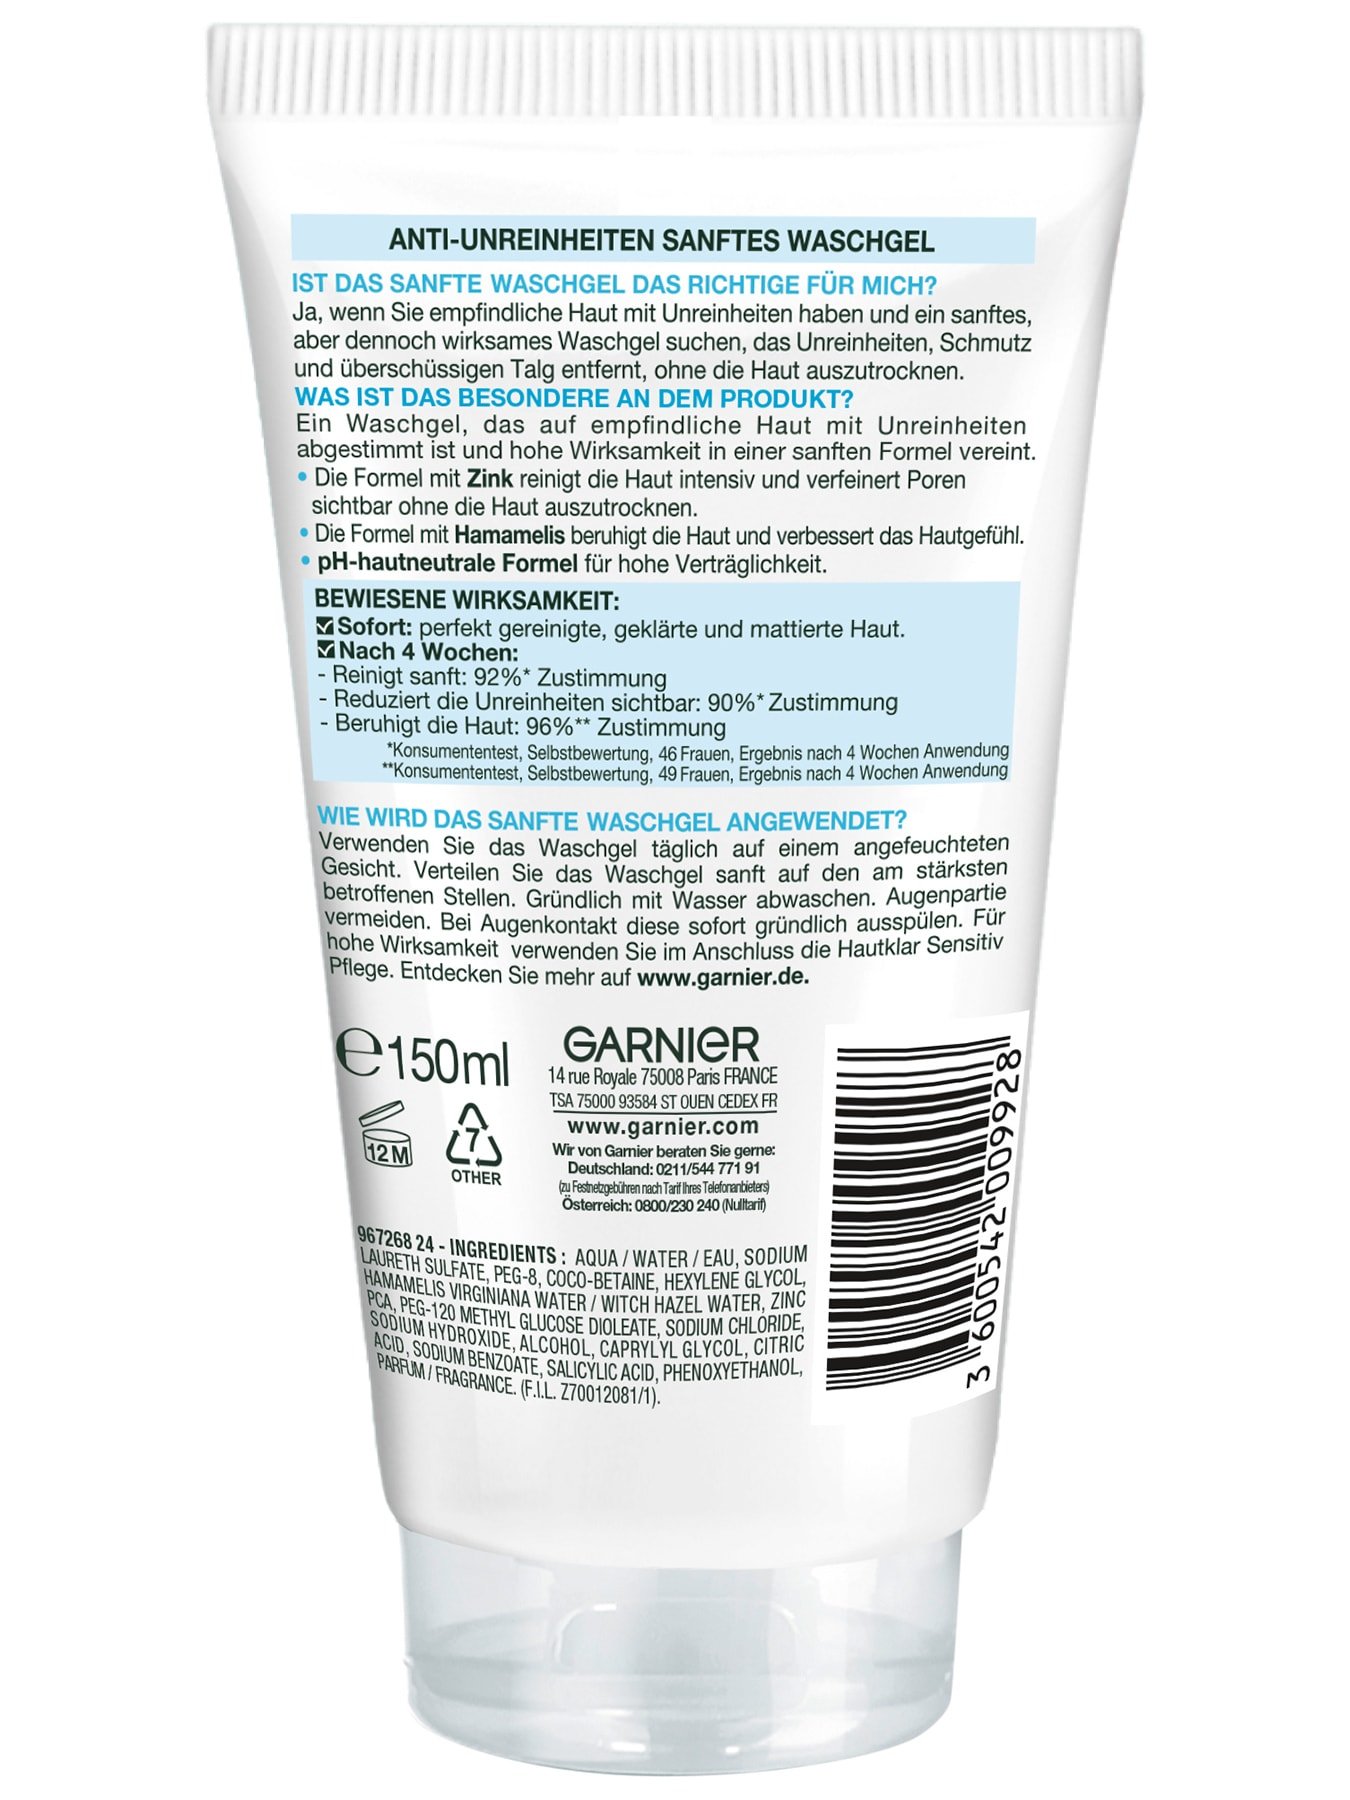 Garnier Hautklar Sensitiv Waschgel Produktverpackung hinten mit Inhaltsstoffen